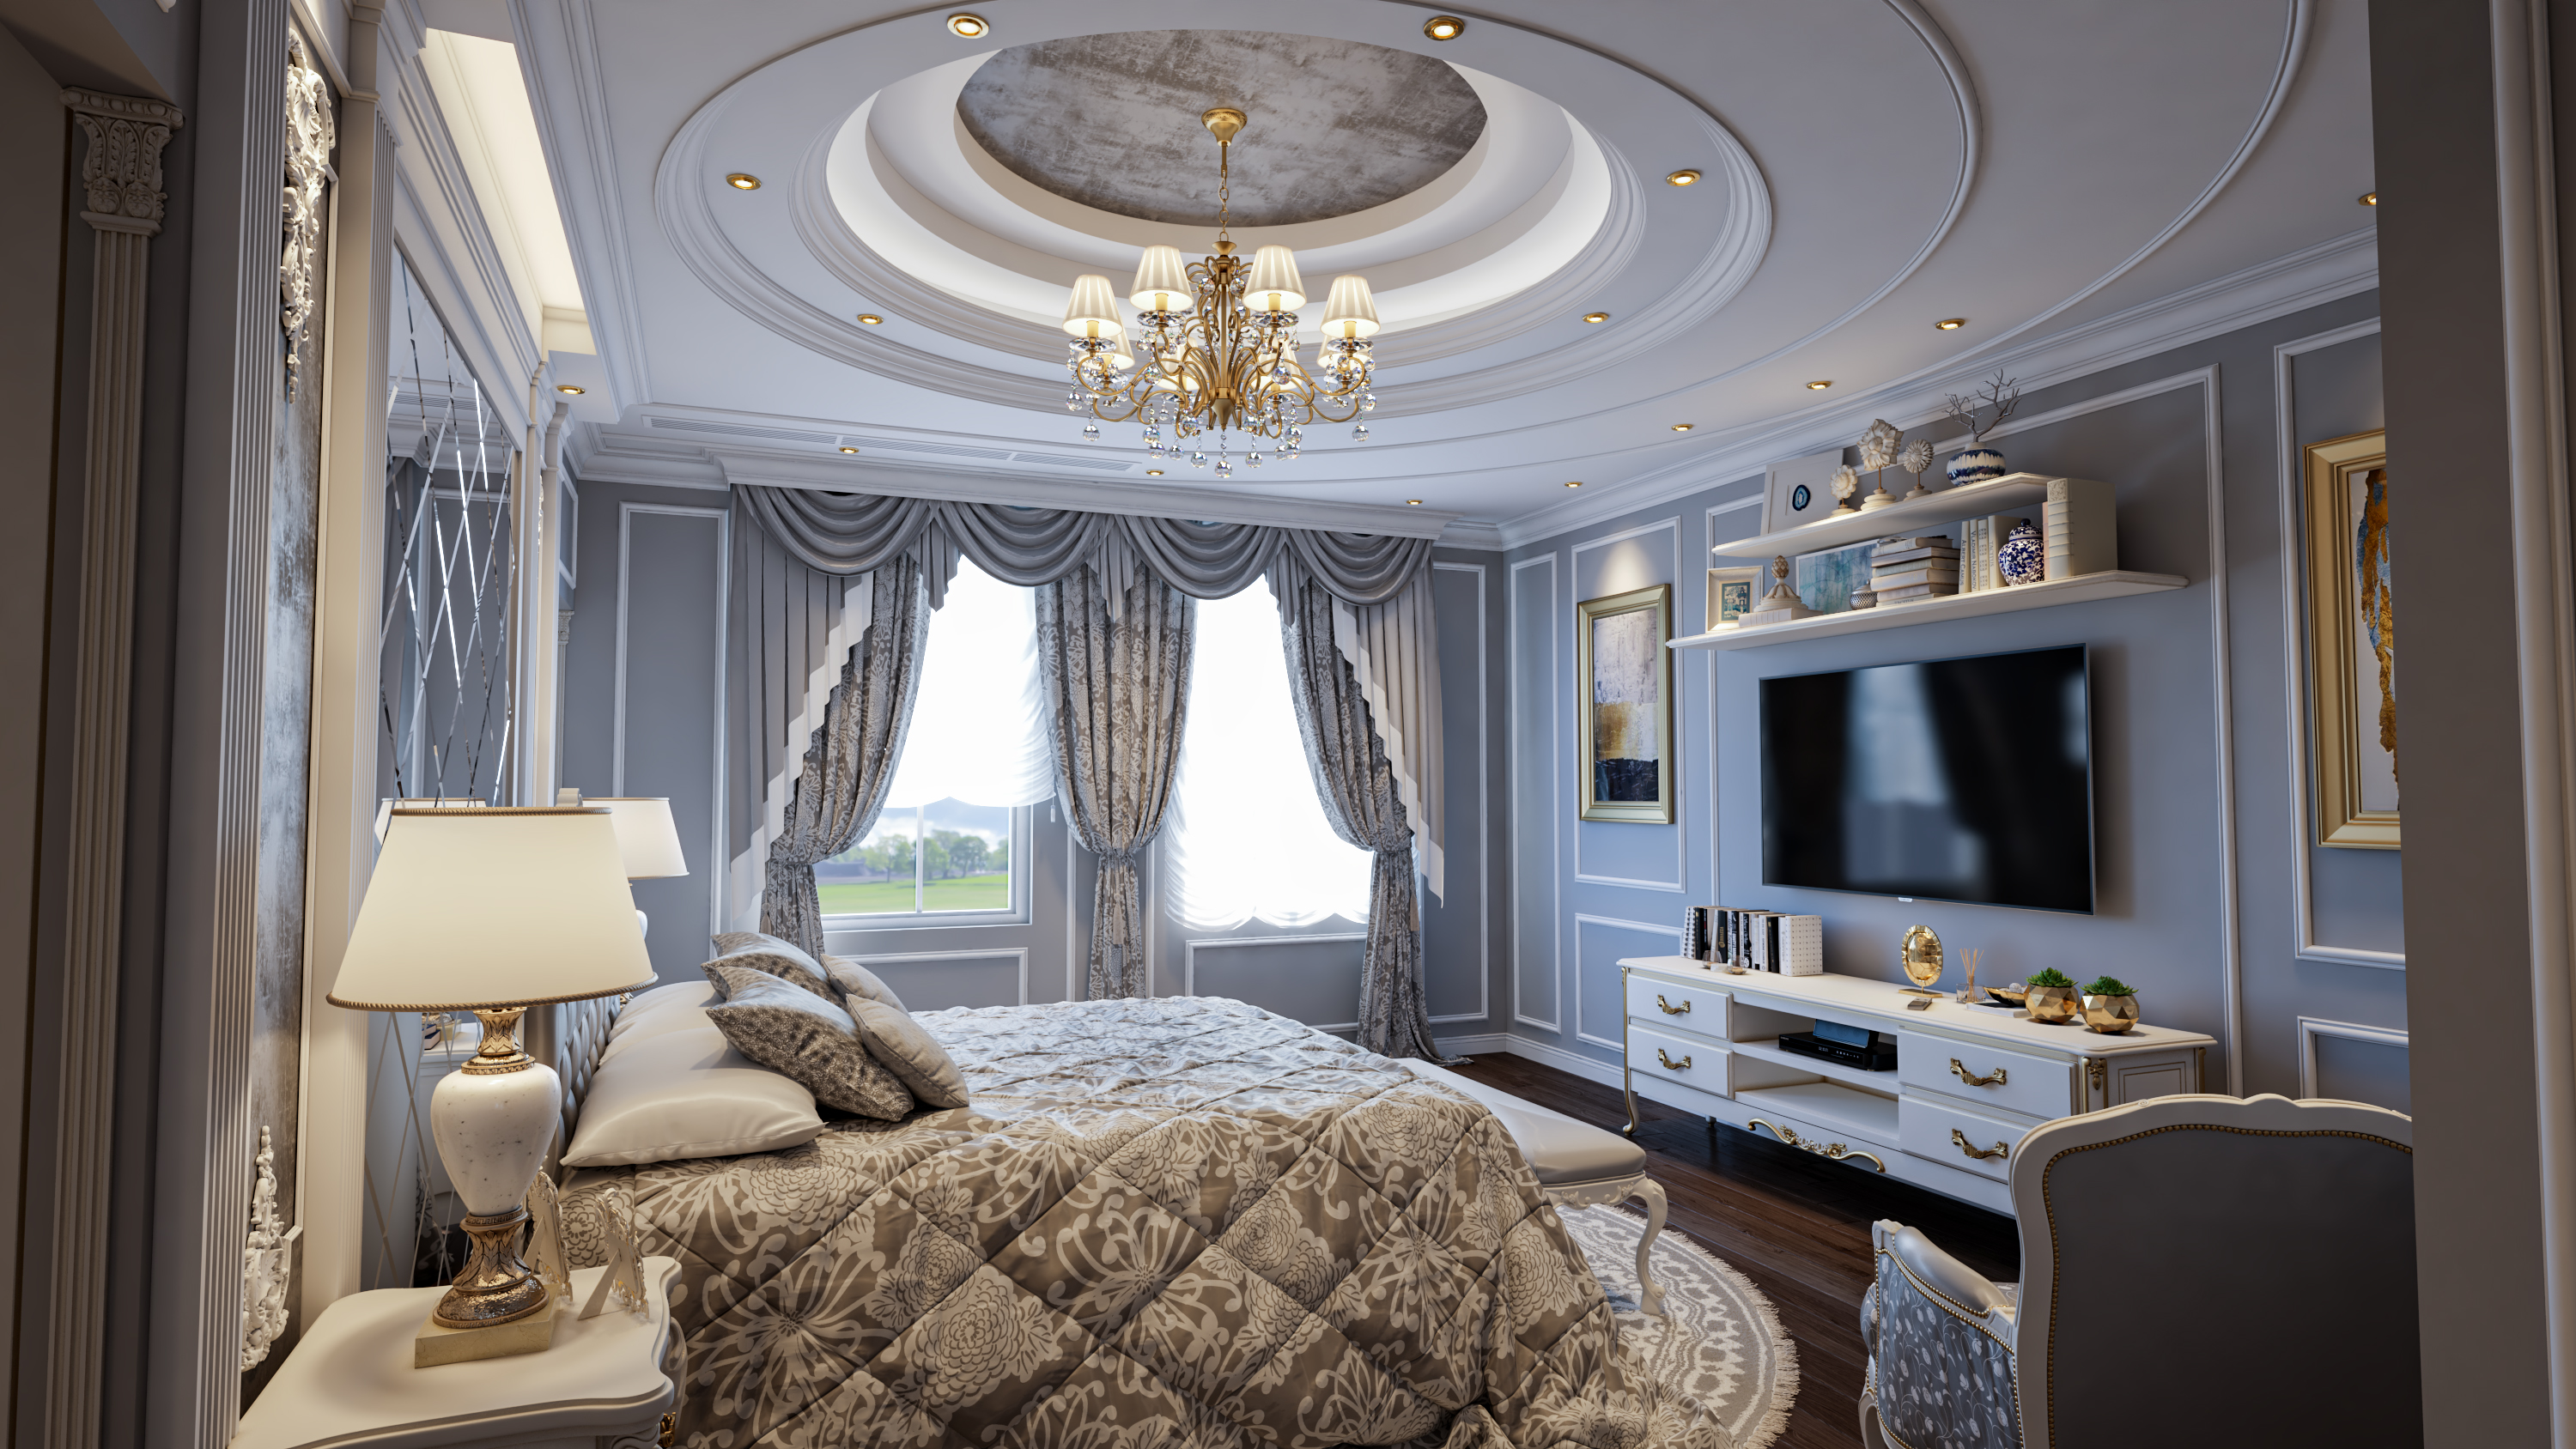 Camera da letto matrimoniale grigio e bianco in 3d max vray 3.0 immagine